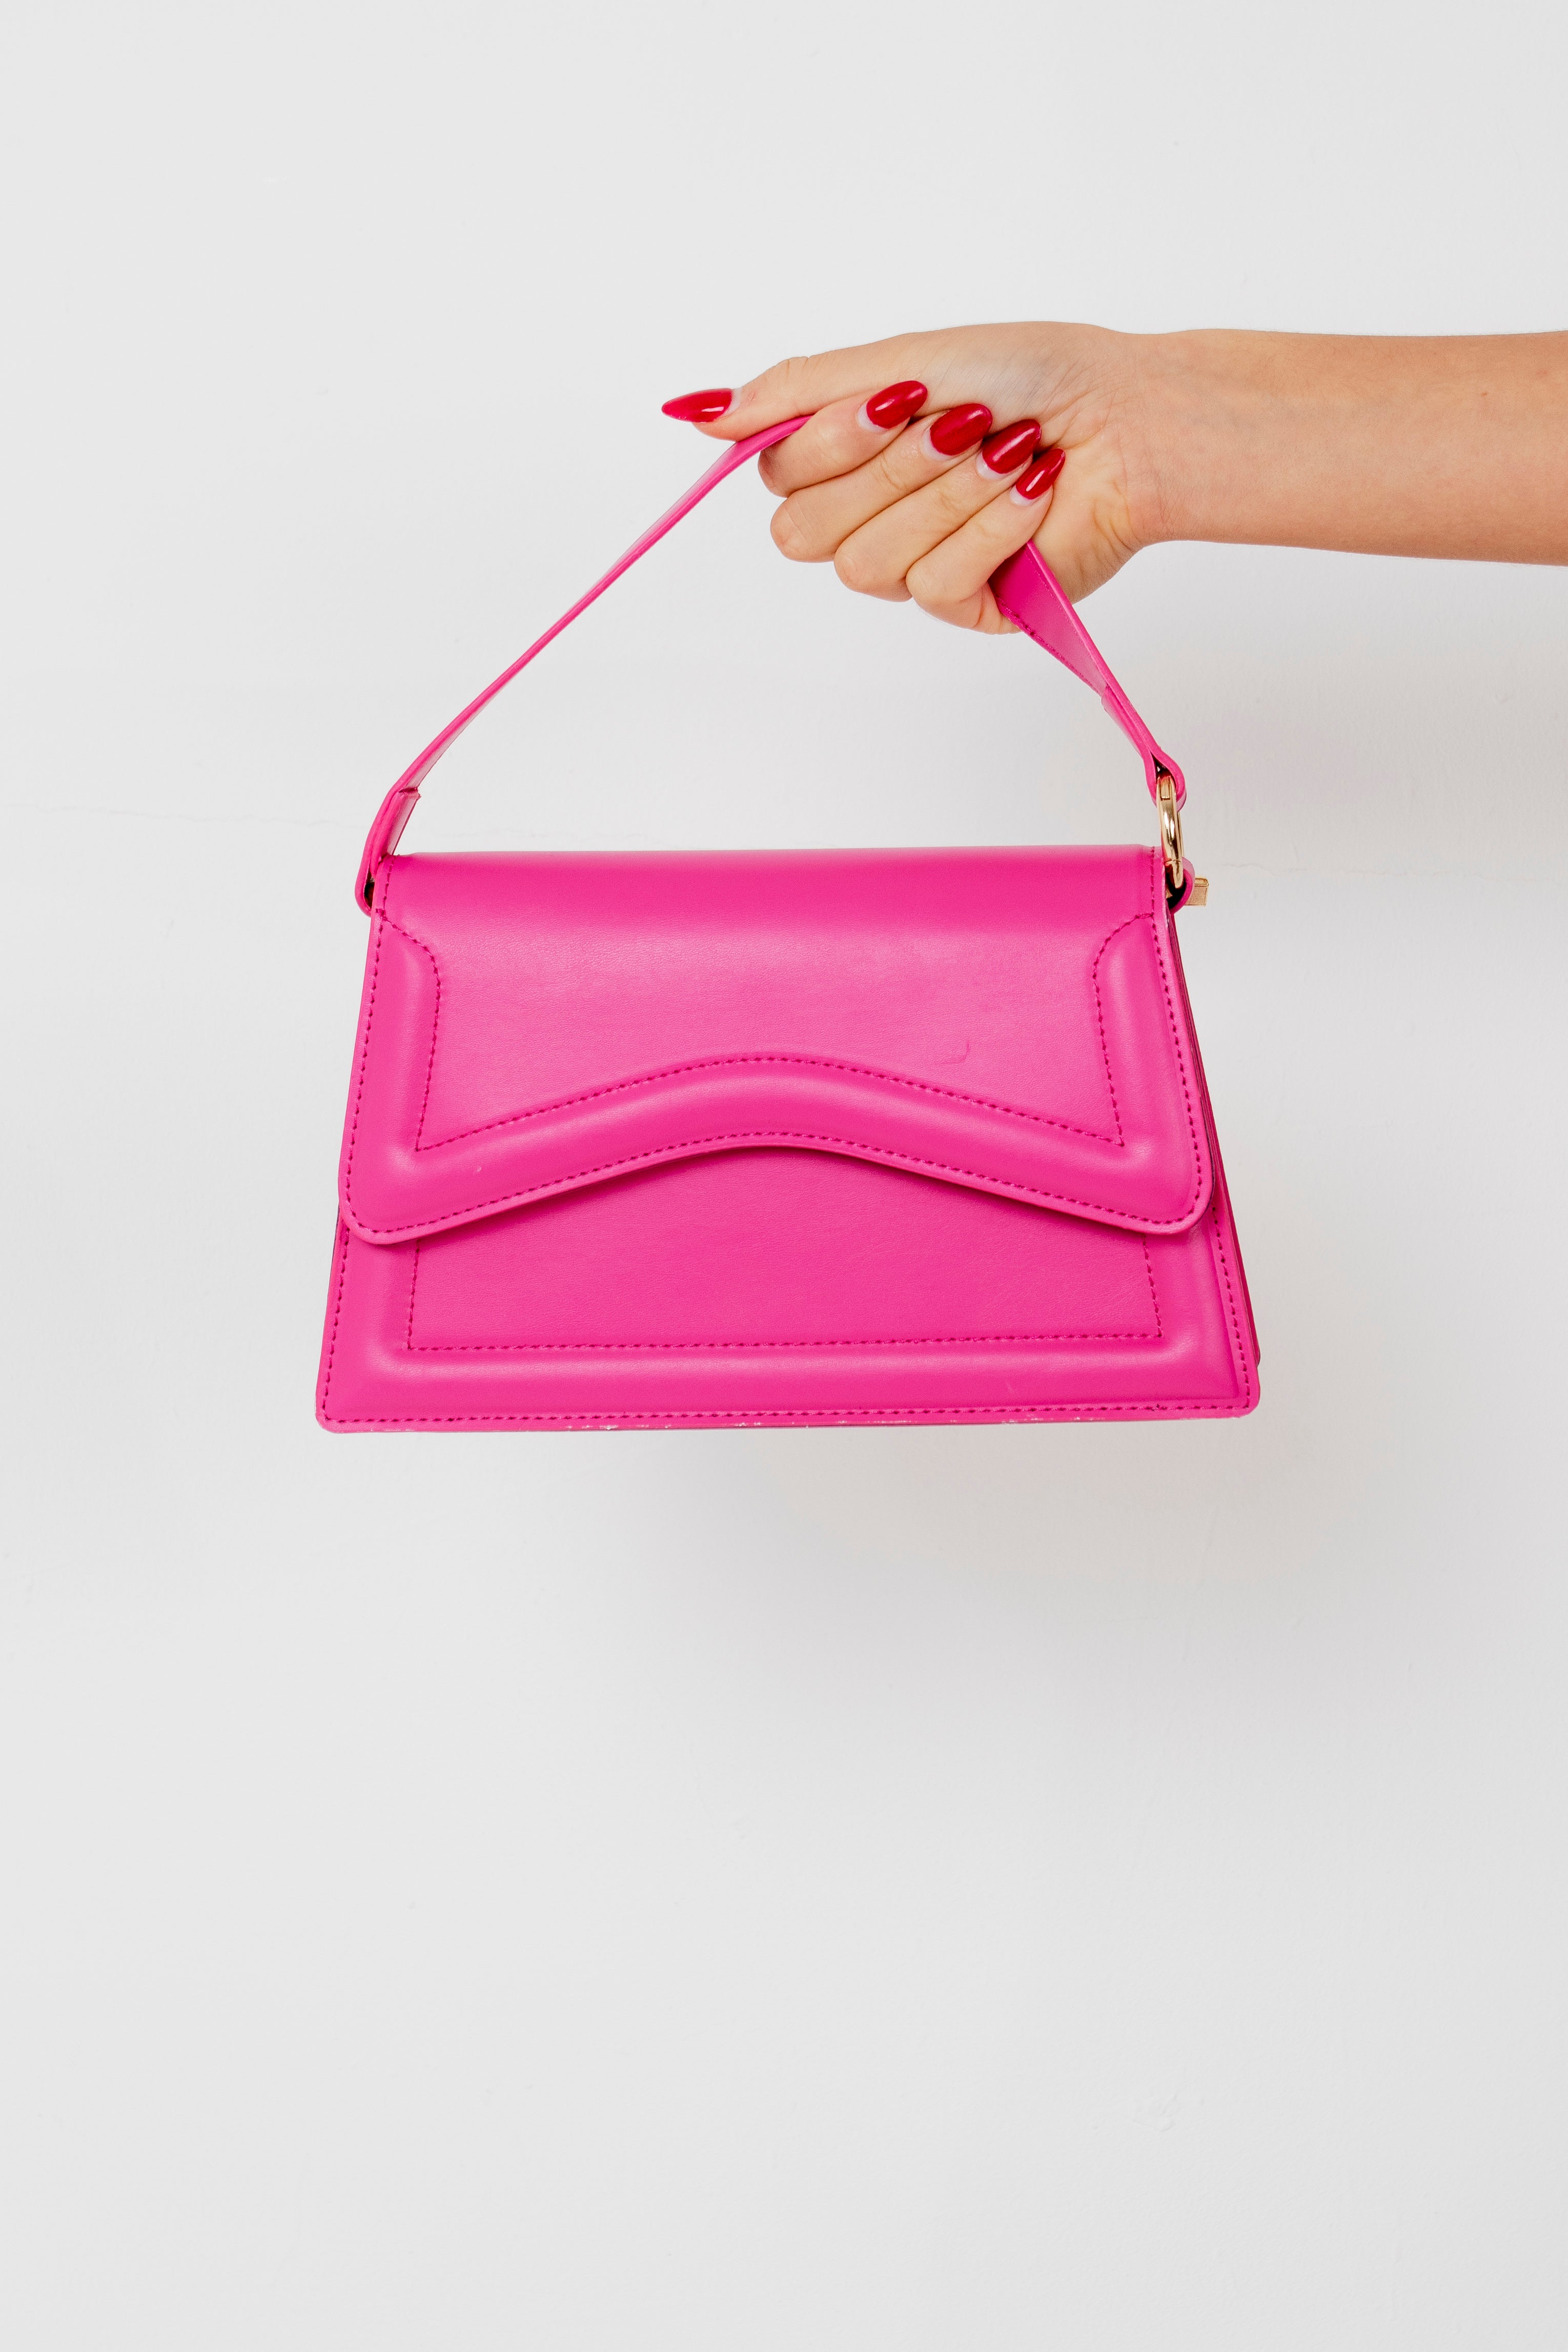 ALAYNA - Pink Mini Bag